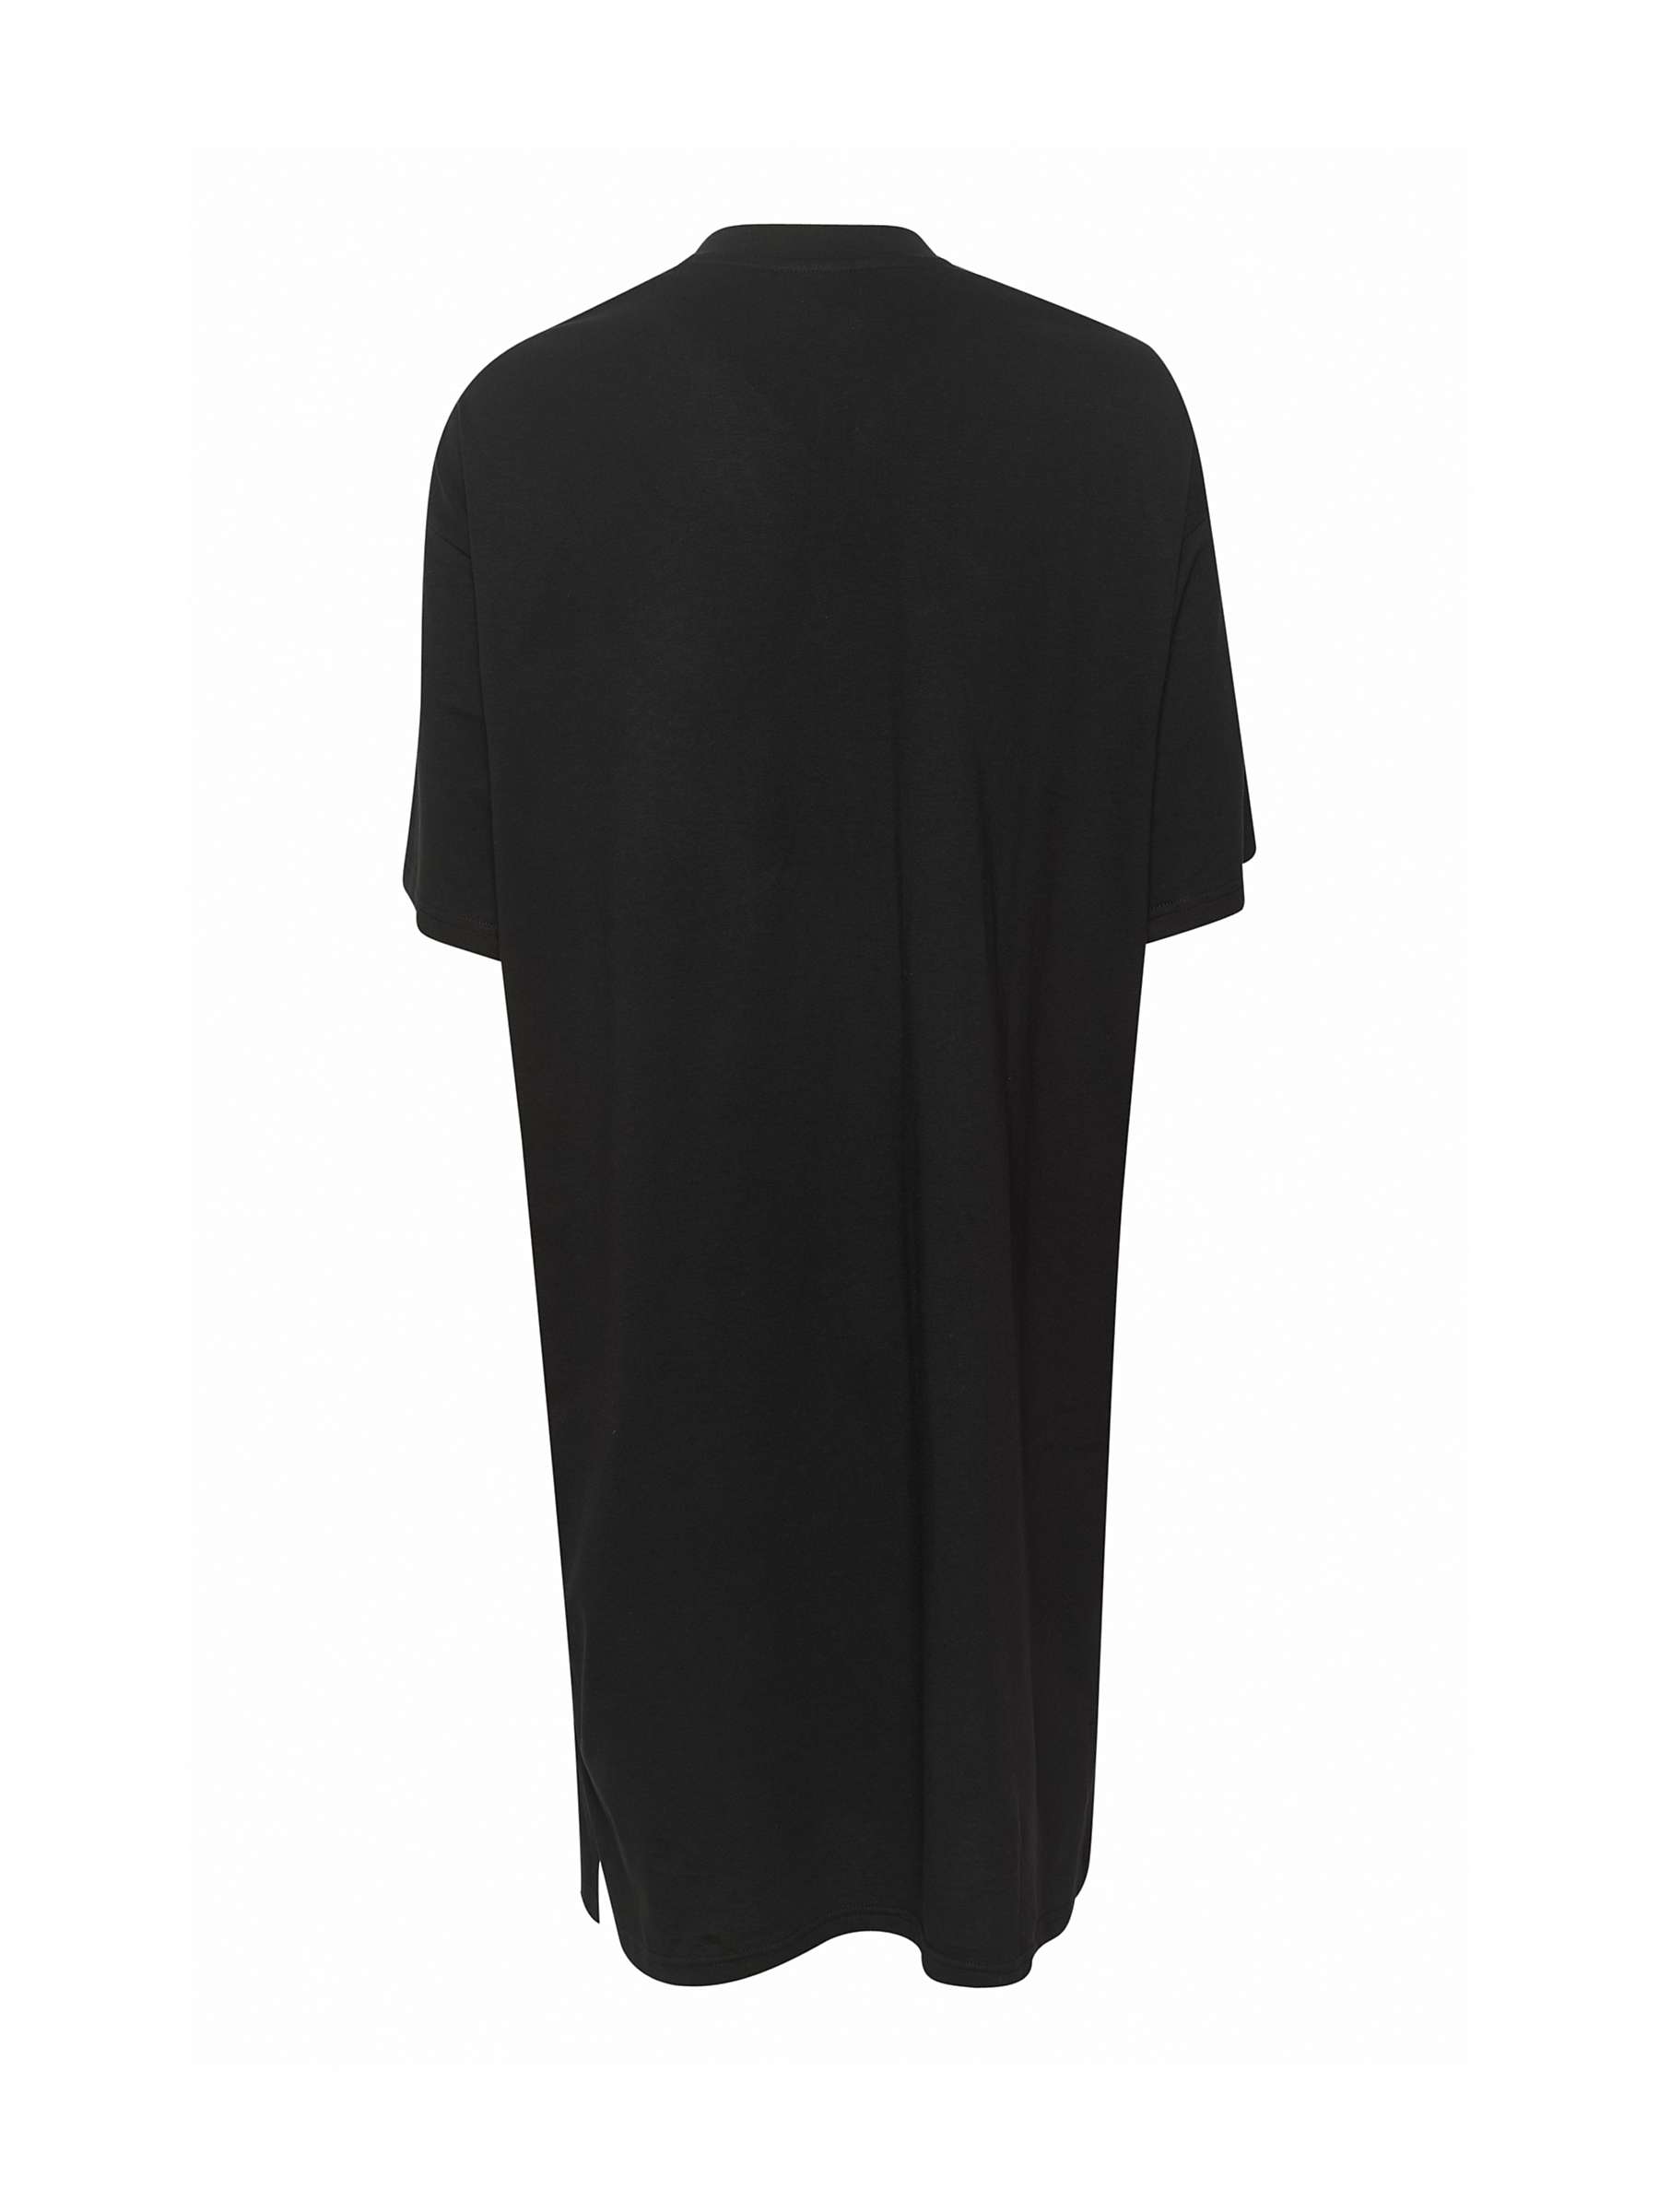 Buy KAFFE Edna Cotton T-Shirt Dress, Black Deep Online at johnlewis.com